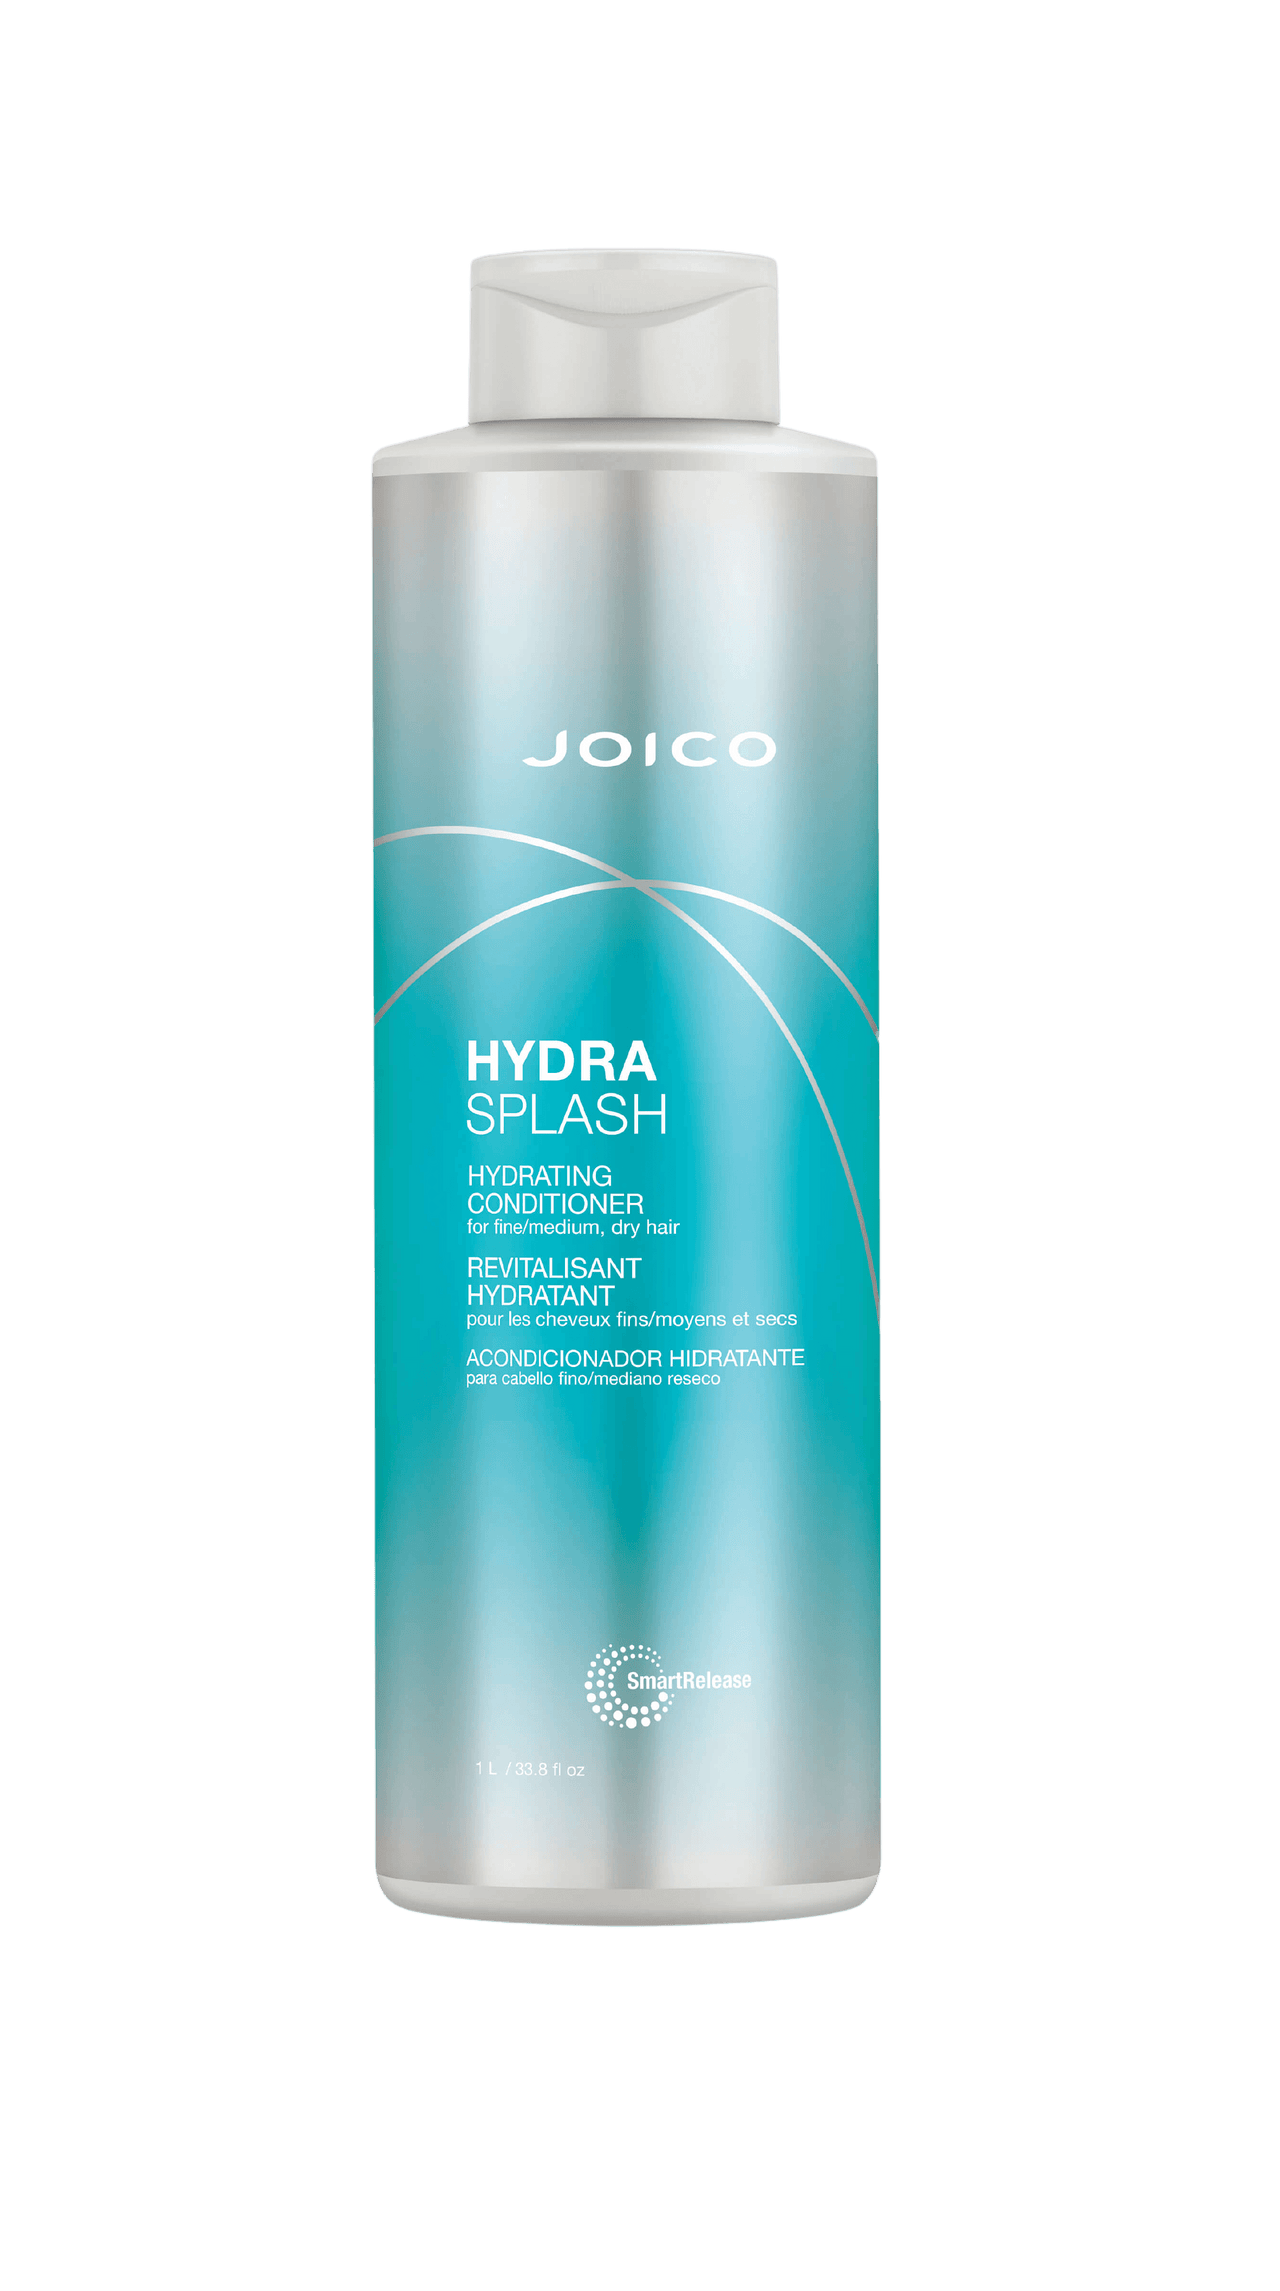 Joico HydraSplash Hydrating Conditioner 33.8oz Bottle